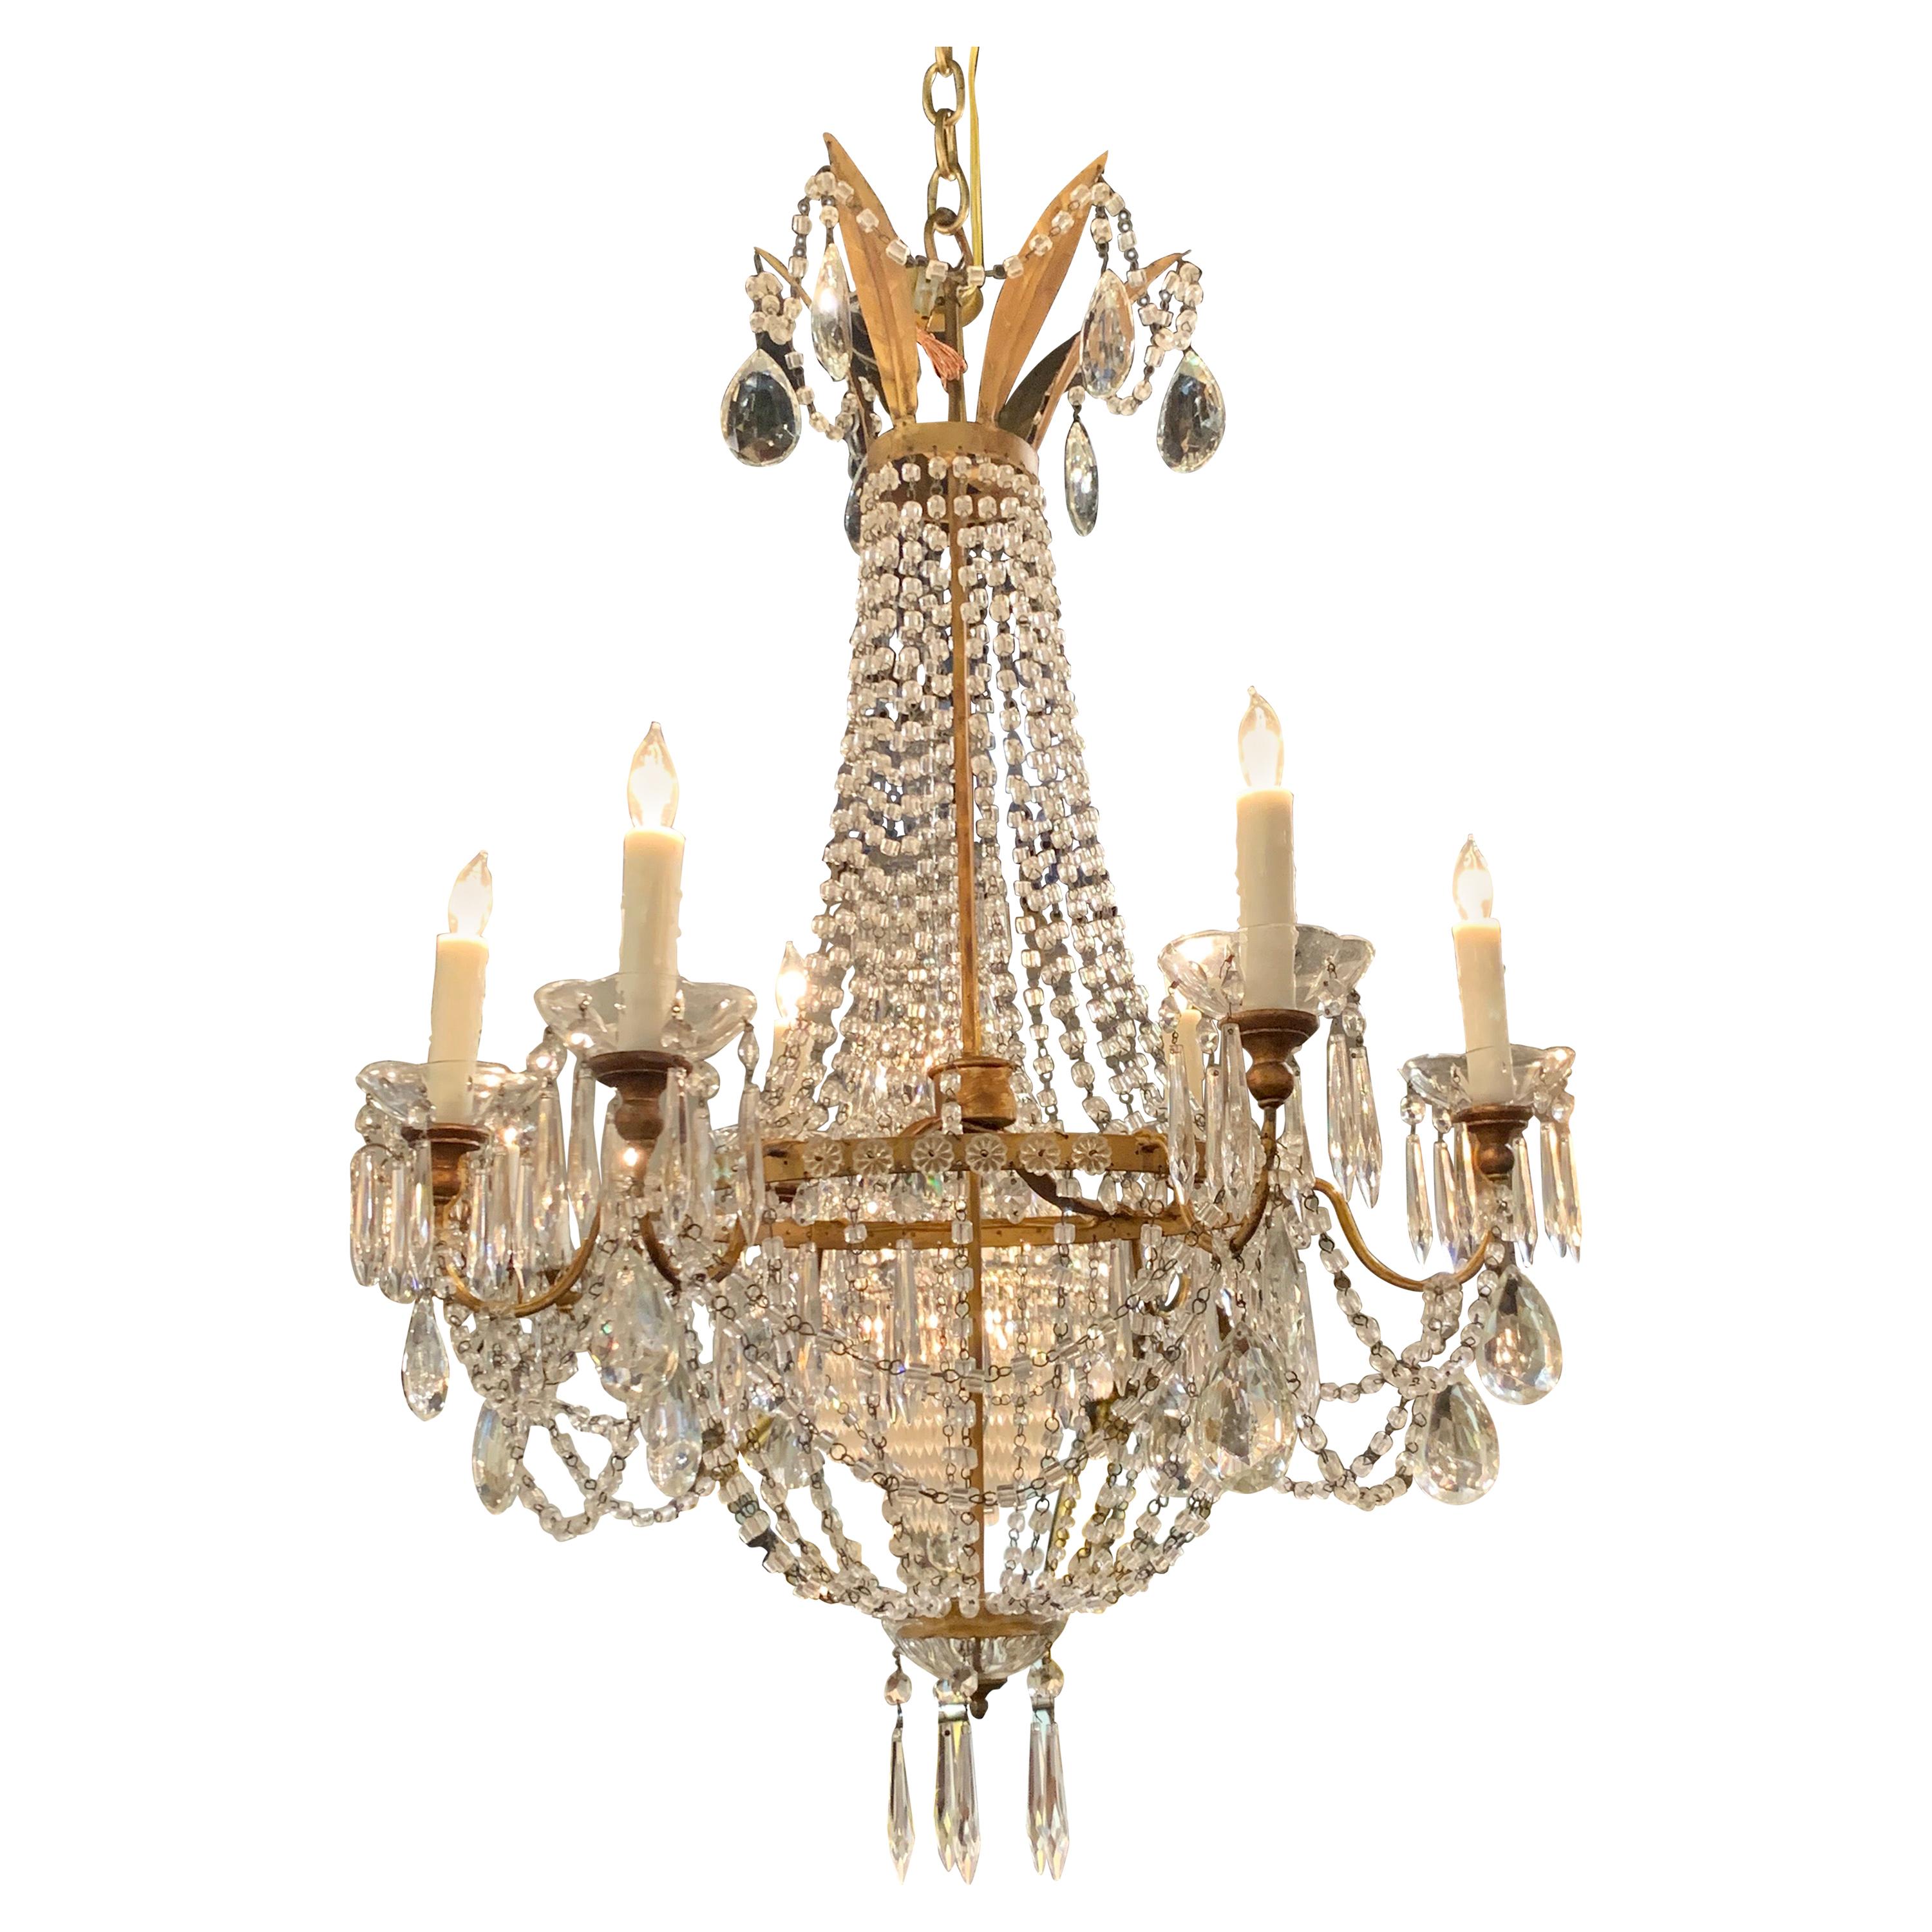 lustre en métal doré et cristal de style Empire italien du 19ème siècle